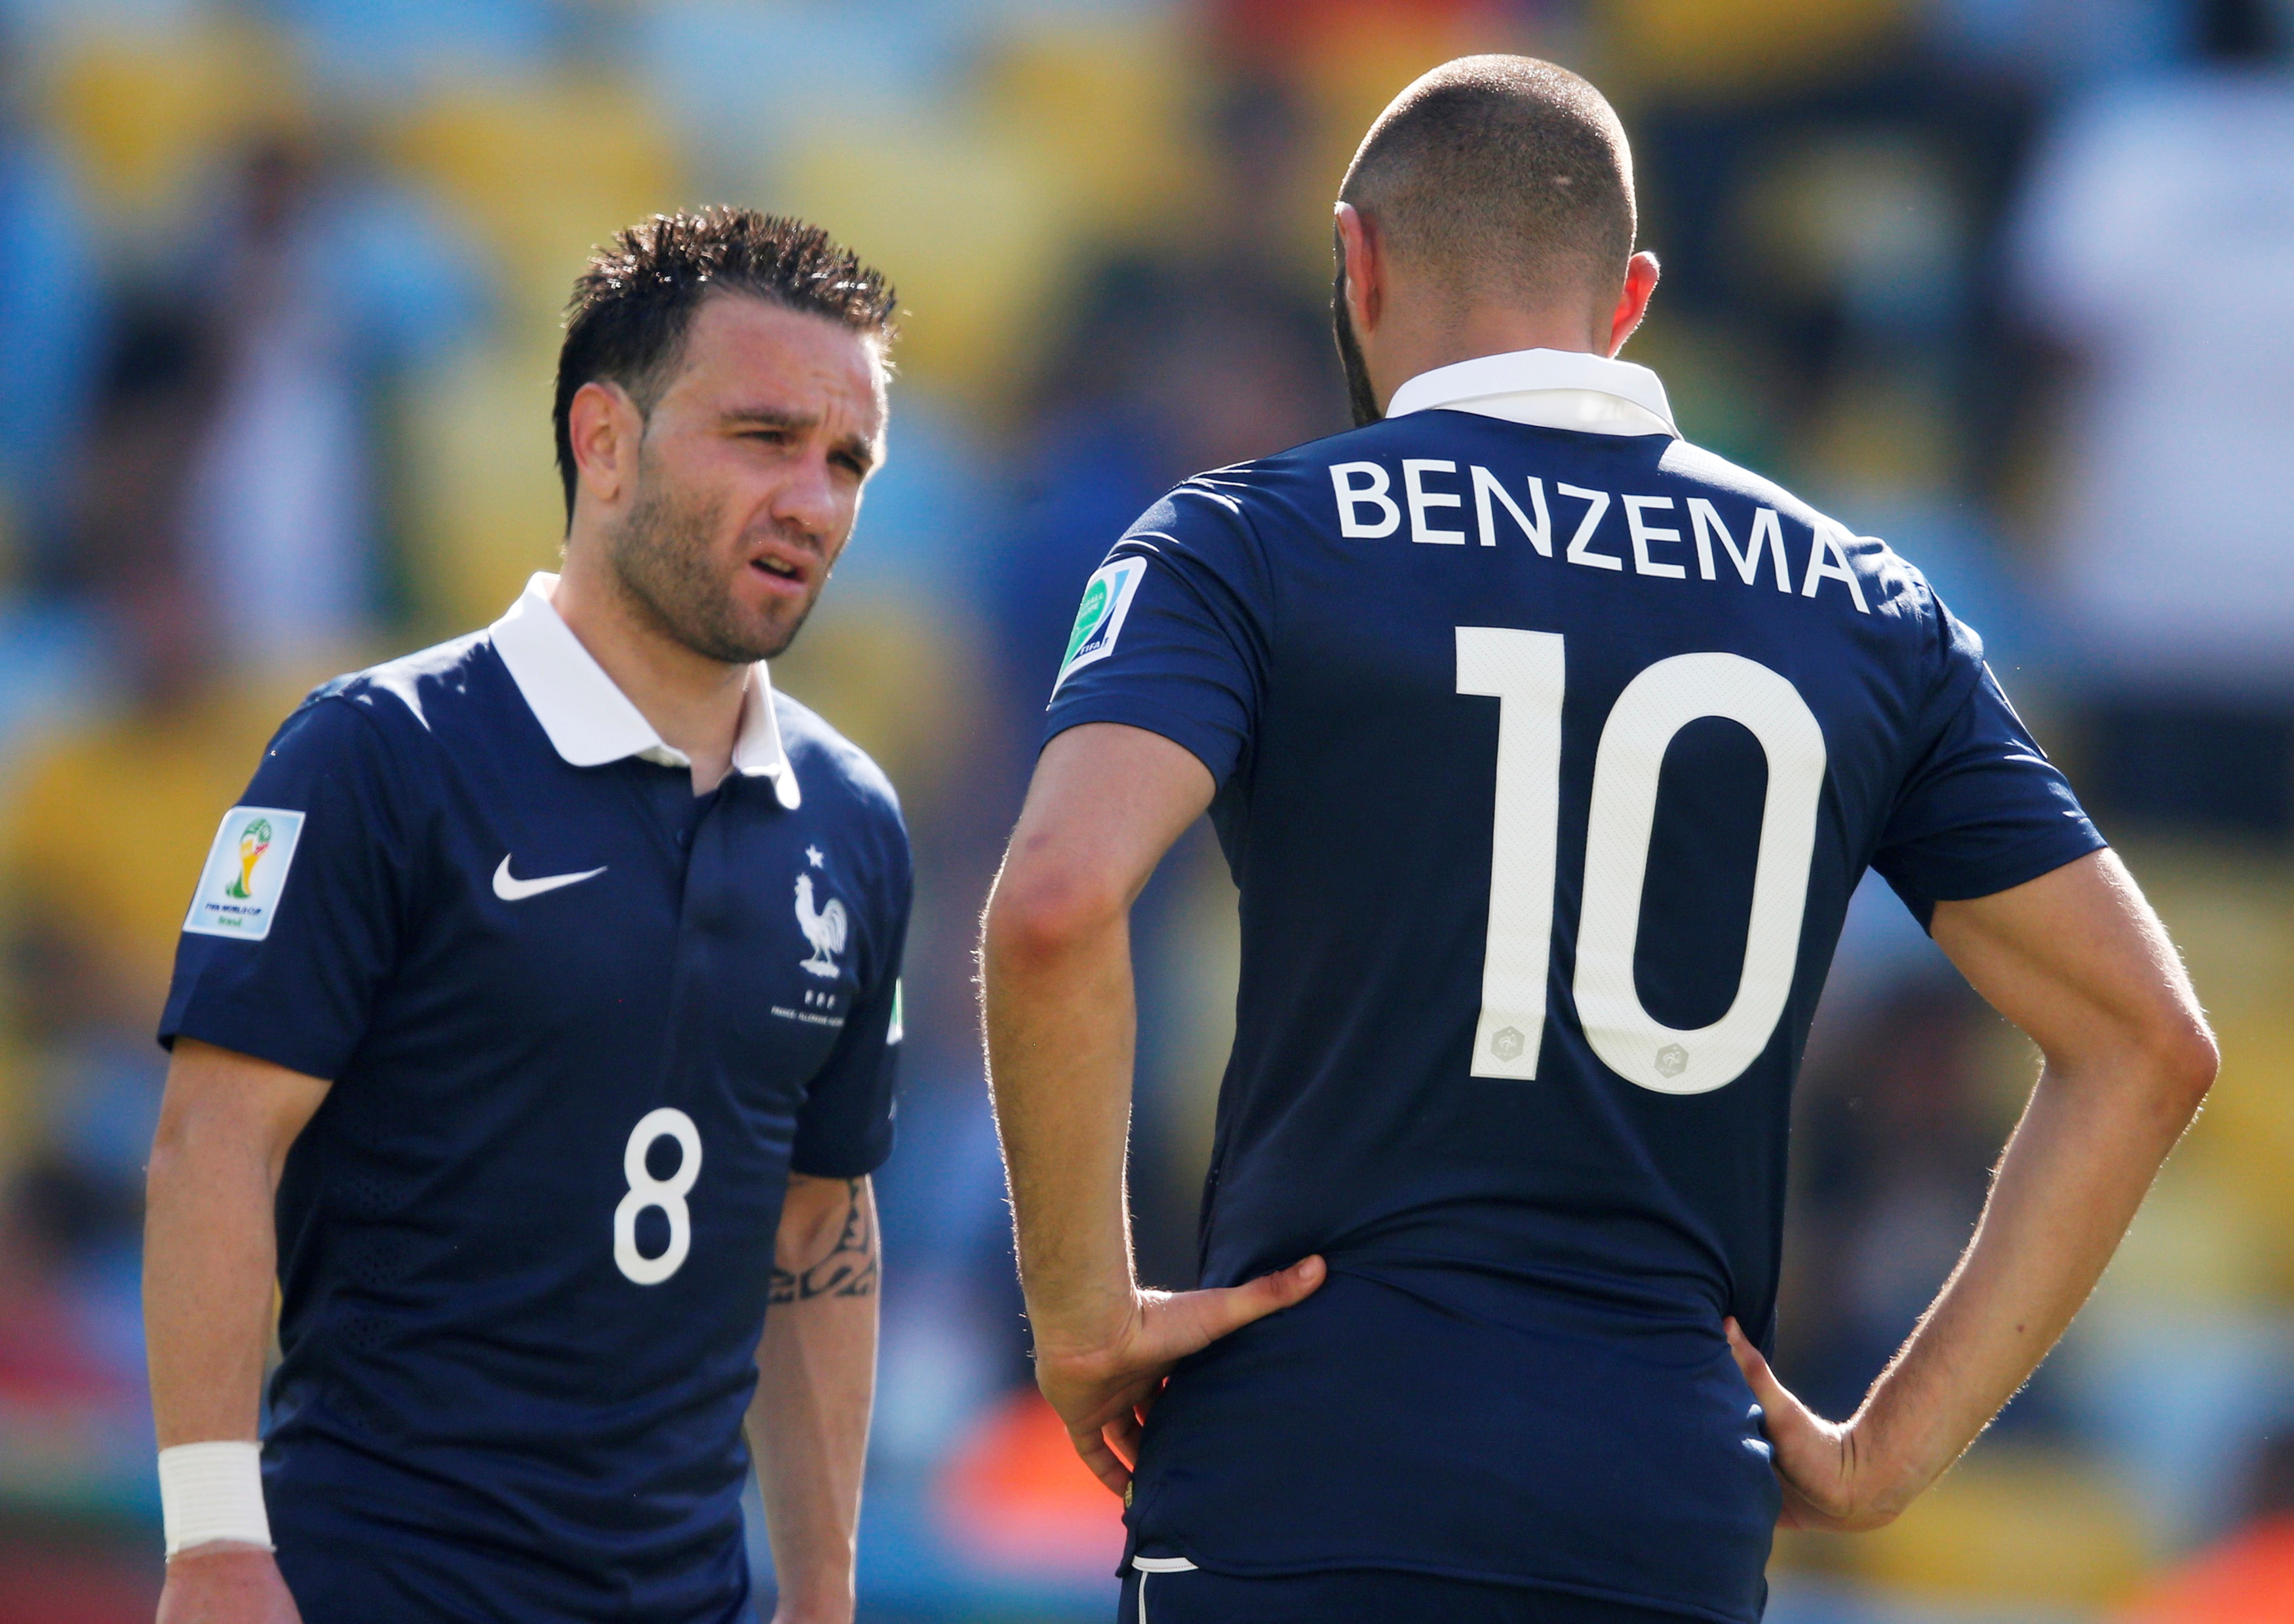 Benzema fue compañero de Mathieu Valbuena en la selección de Francia durante el Mundial 2014 (Foto: REUTERS)